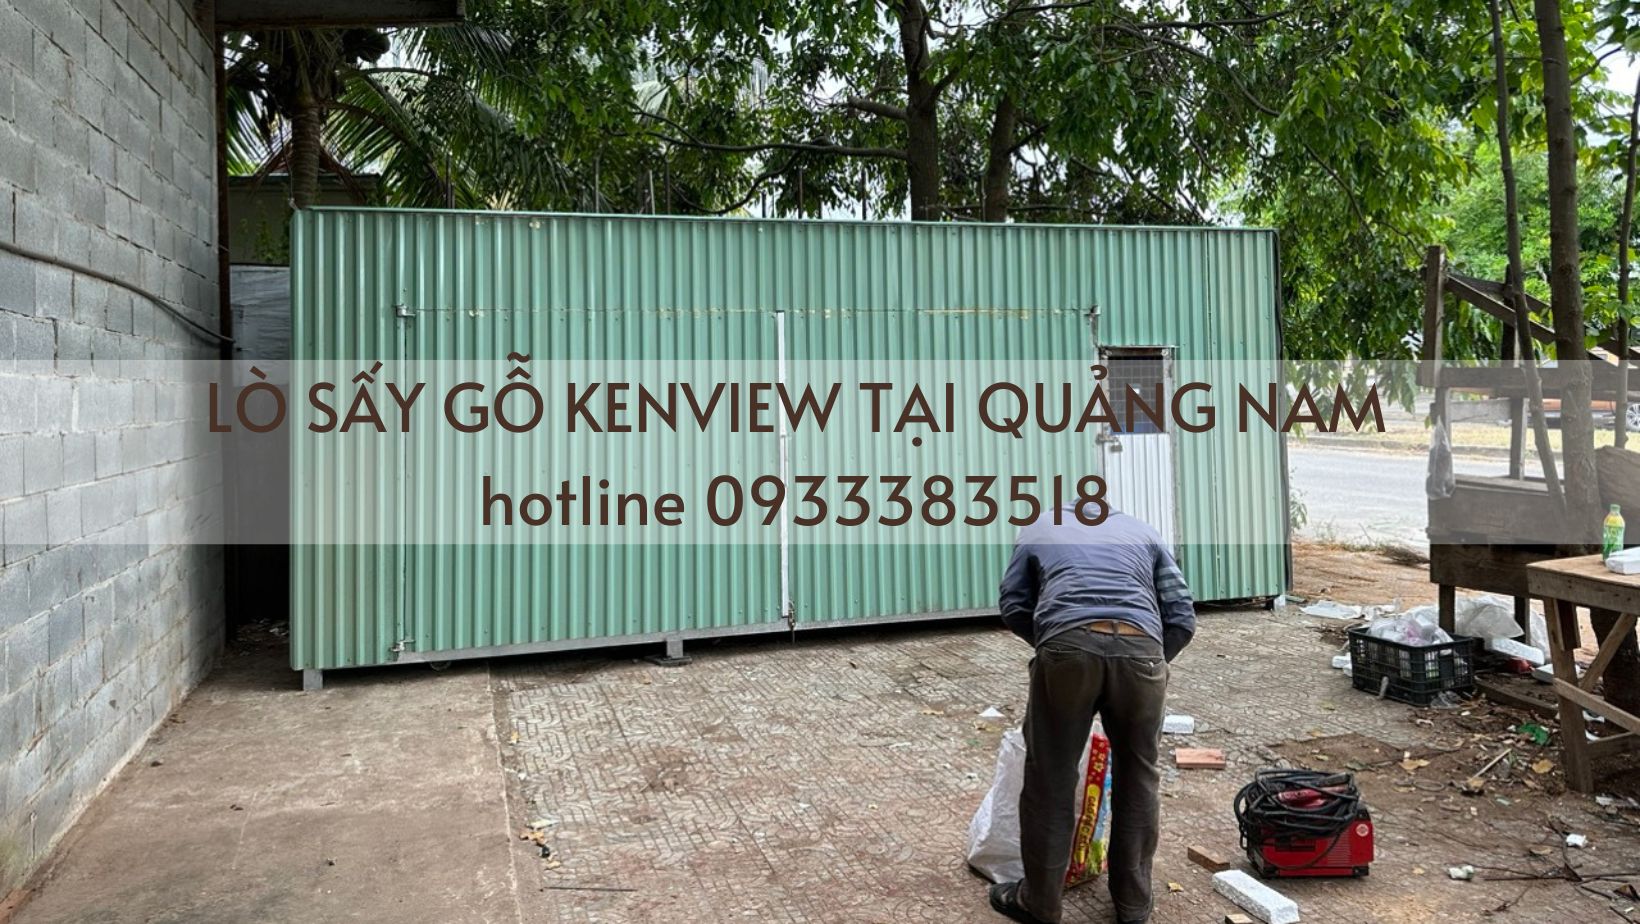 Lò sấy gỗ kenview tại Quảng Nam